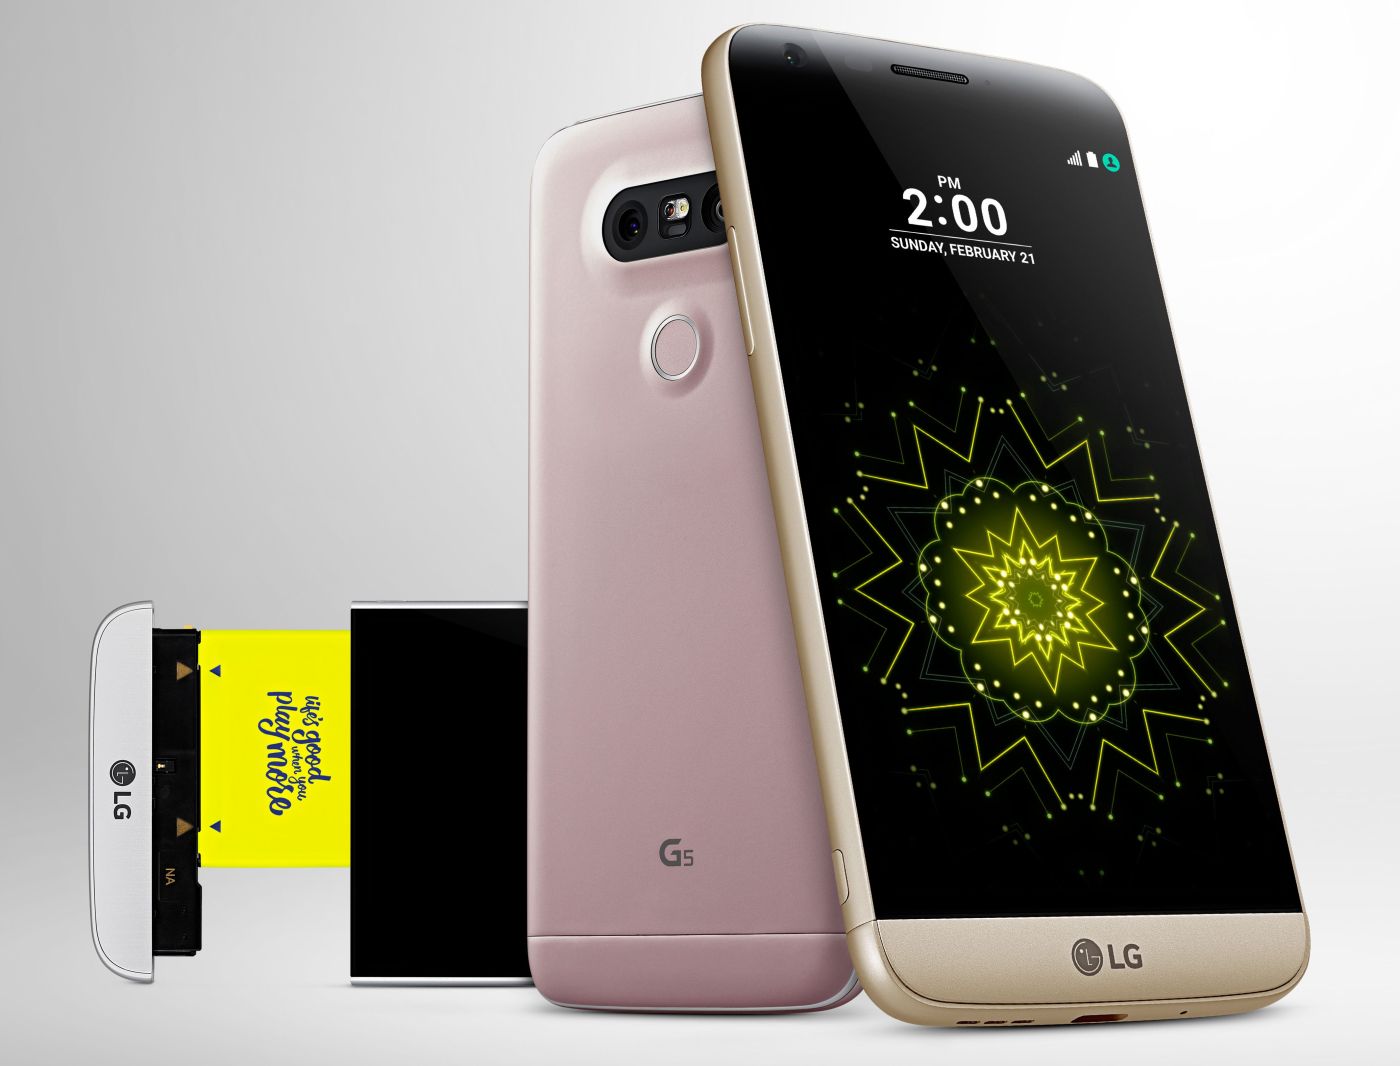 LG G5 India